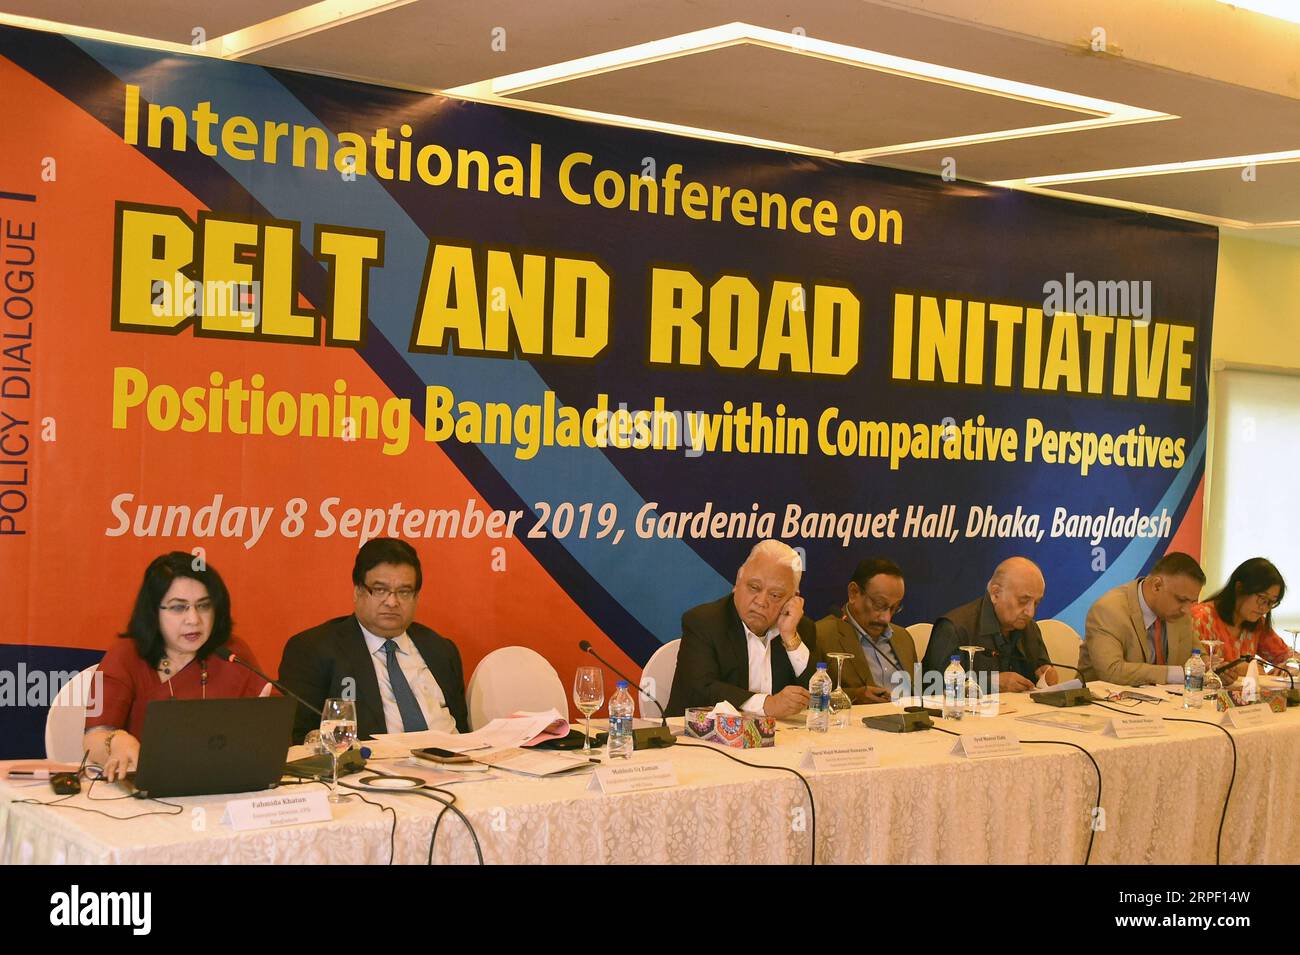 (190909) -- DHAKA, 9 settembre 2019 () -- Fahmida Khatun (1st L), direttore esecutivo del Centre for Policy Dialogue (CPD), presenta una conferenza internazionale intitolata Belt and Road Initiative: Positioning Bangladesh within comparative Perspectives a Dacca, Bangladesh, l'8 settembre 2019. Il Centre for Policy Dialogue (CPD), uno dei principali think tank della società civile bengalese, ha convocato la conferenza nella capitale Dacca domenica. Il CPD ha affermato che la Belt and Road Initiative (BRI) promette di fornire infrastrutture fisiche e morbide attraverso i suoi corridoi con l'obiettivo di migliorare Foto Stock